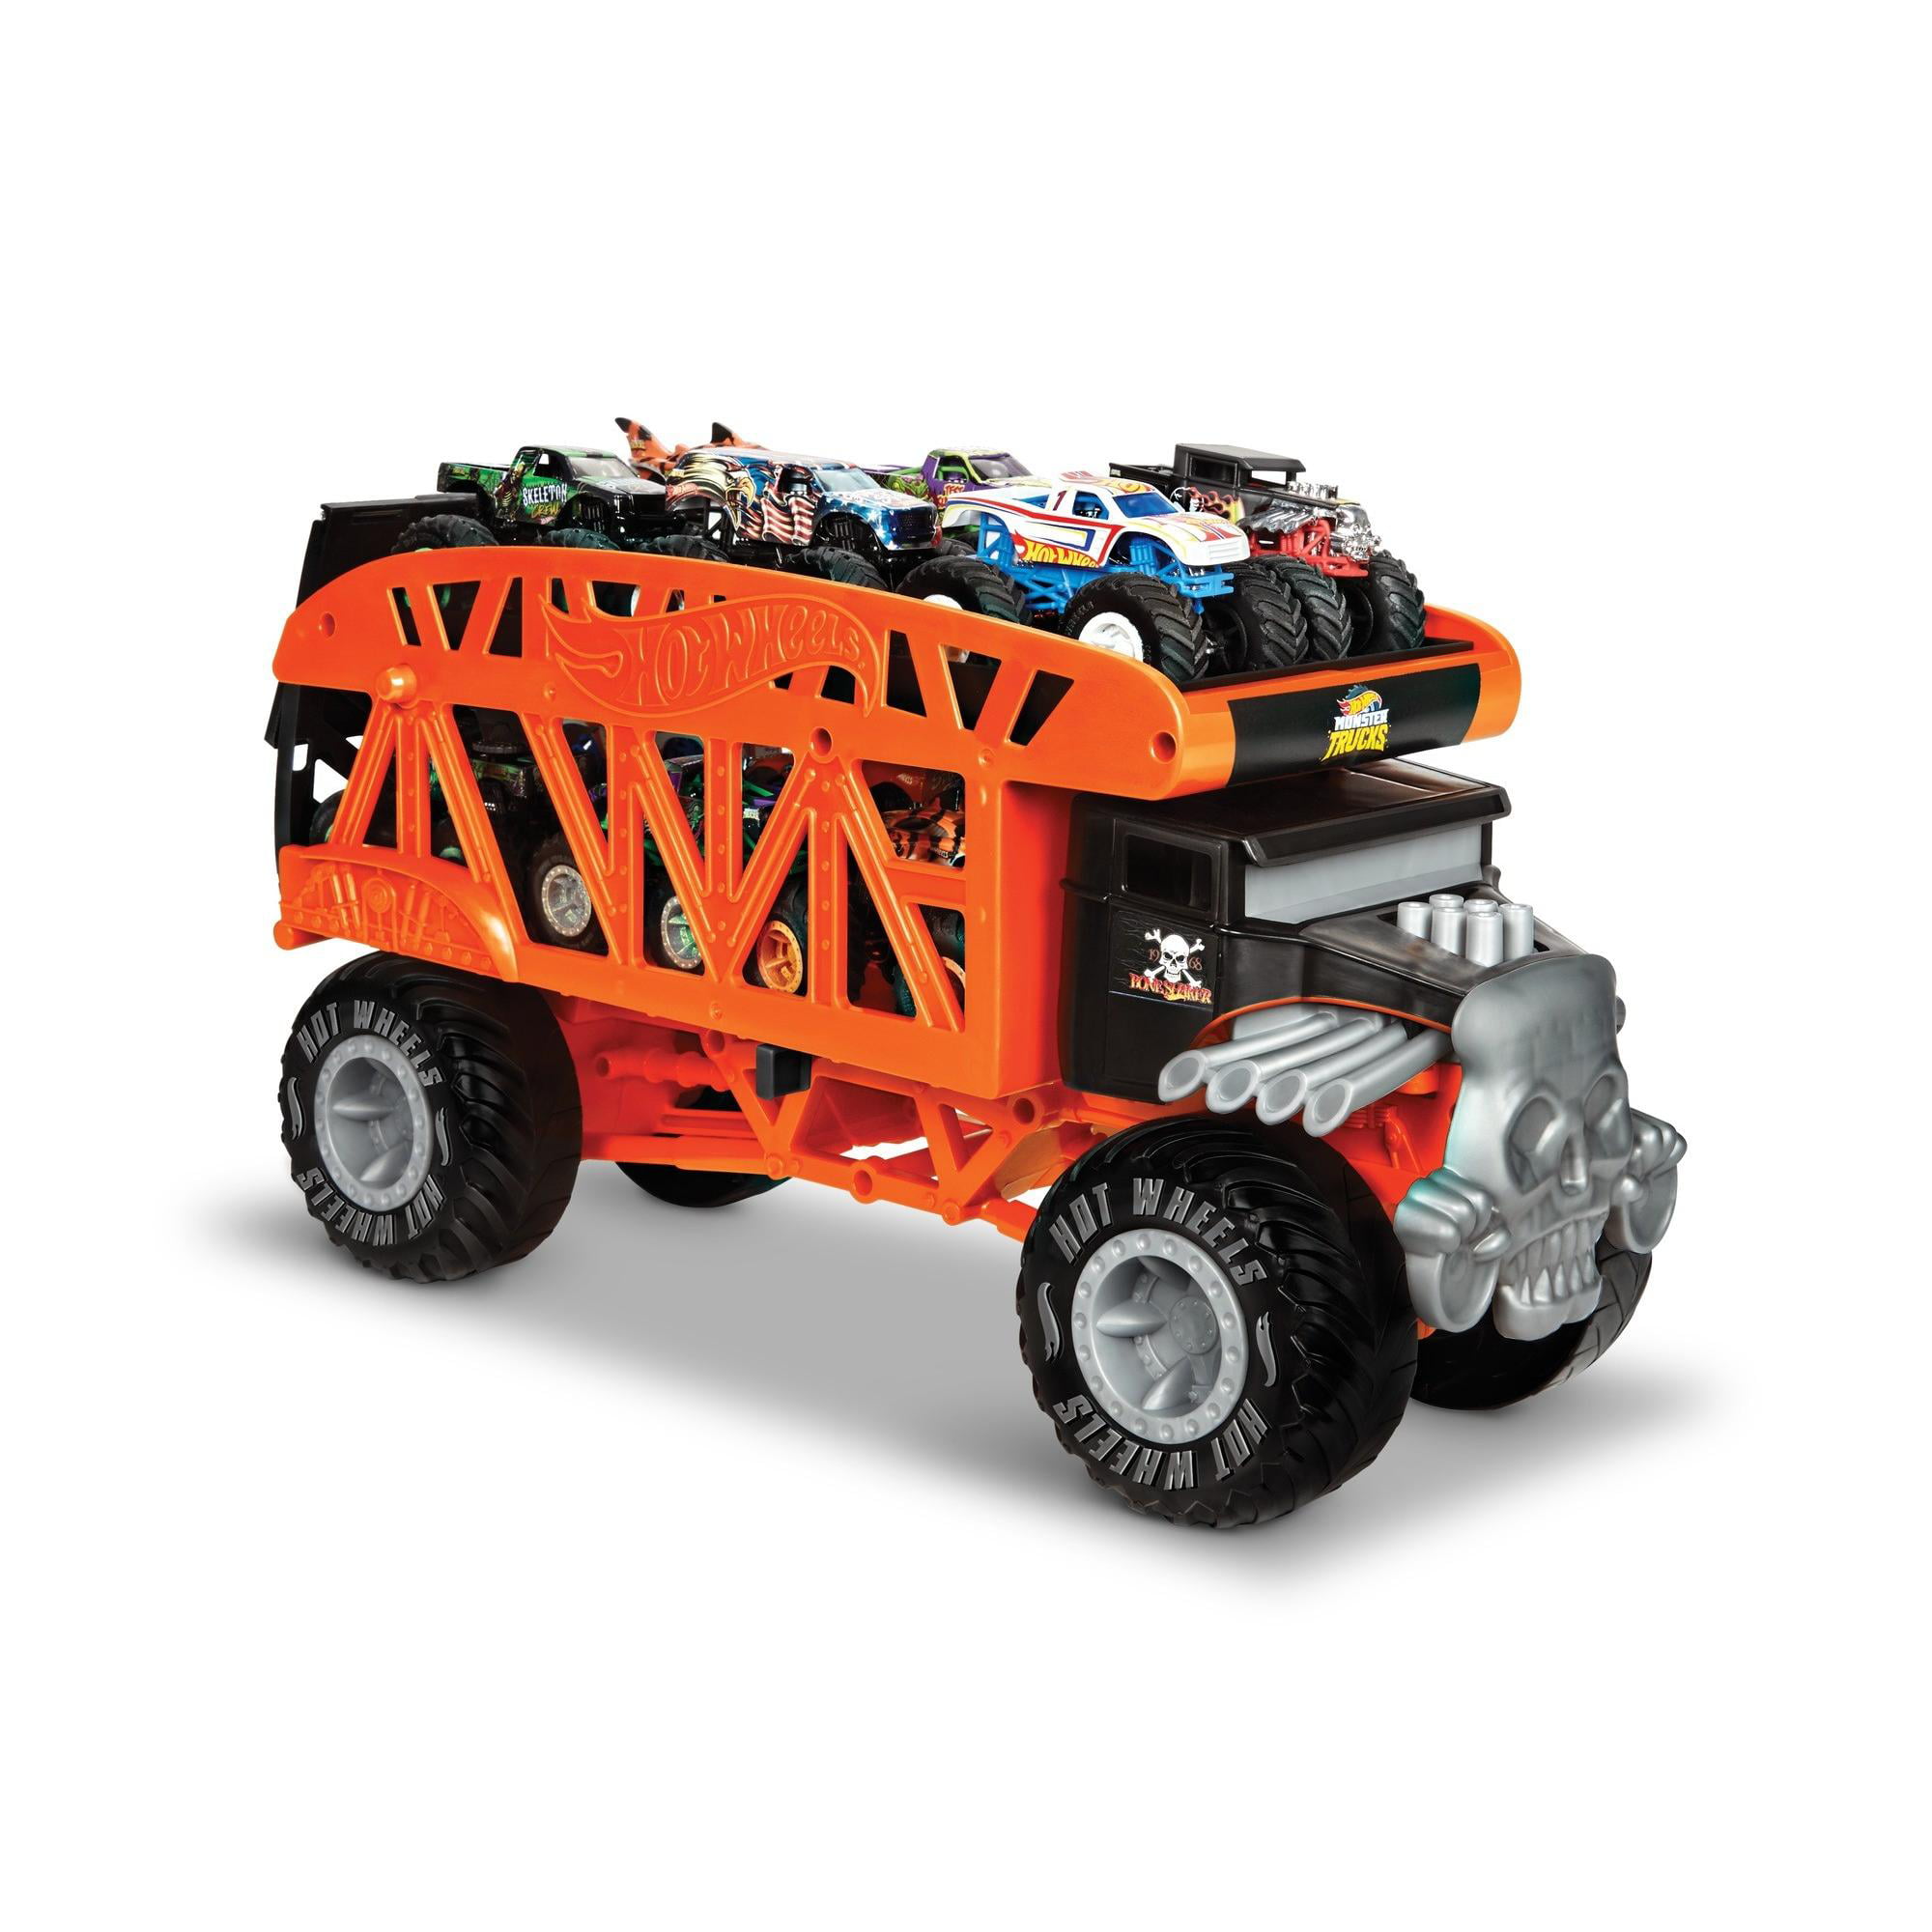 blippi monster truck toy